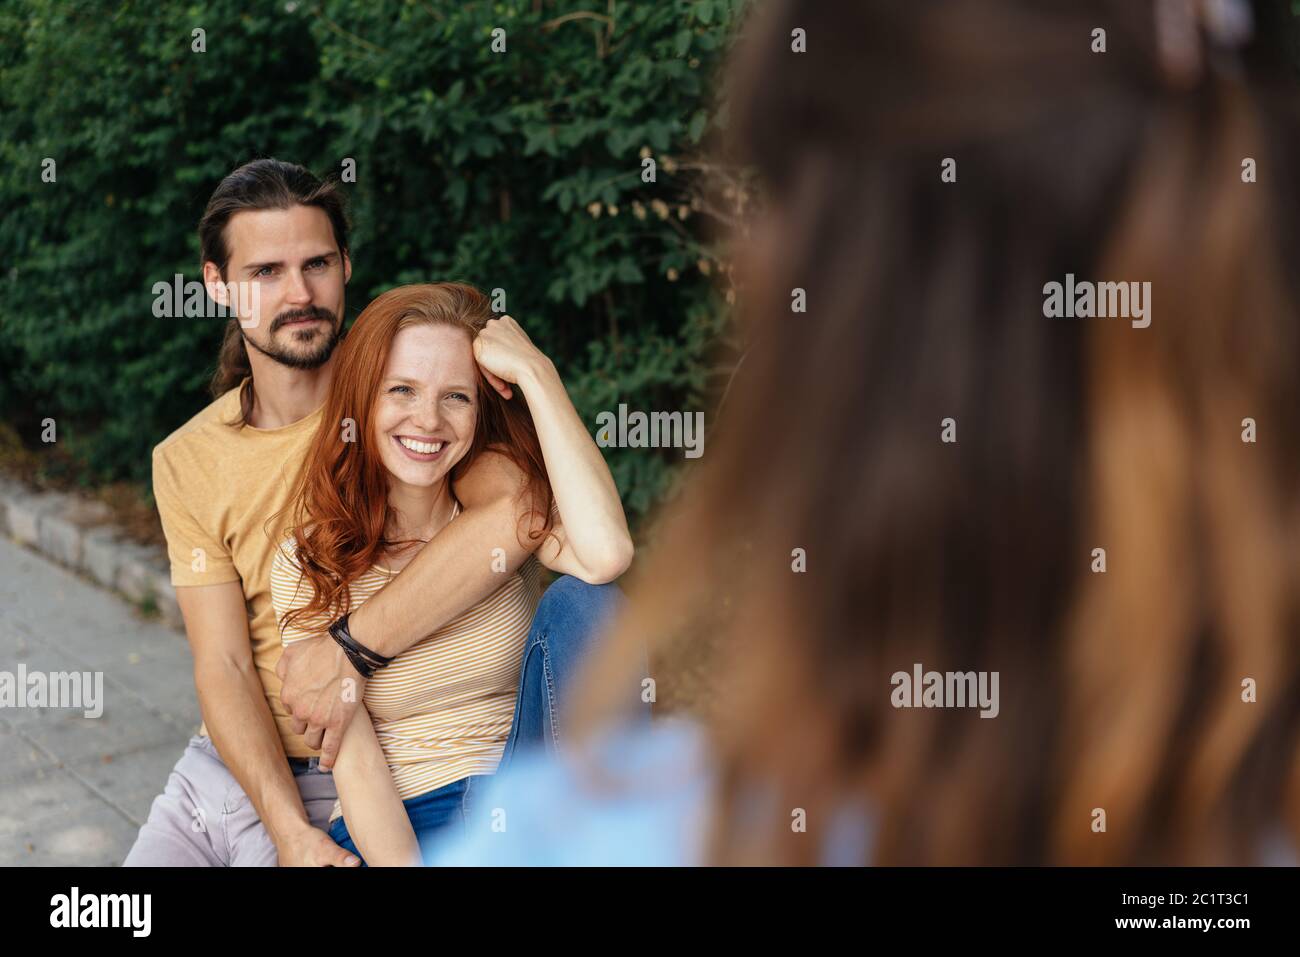 Liebevolles junges Paar in einer engen Umarmung in einem grünen Garten im Gespräch mit einem Freund in einer über die Schulter-Ansicht Stockfoto